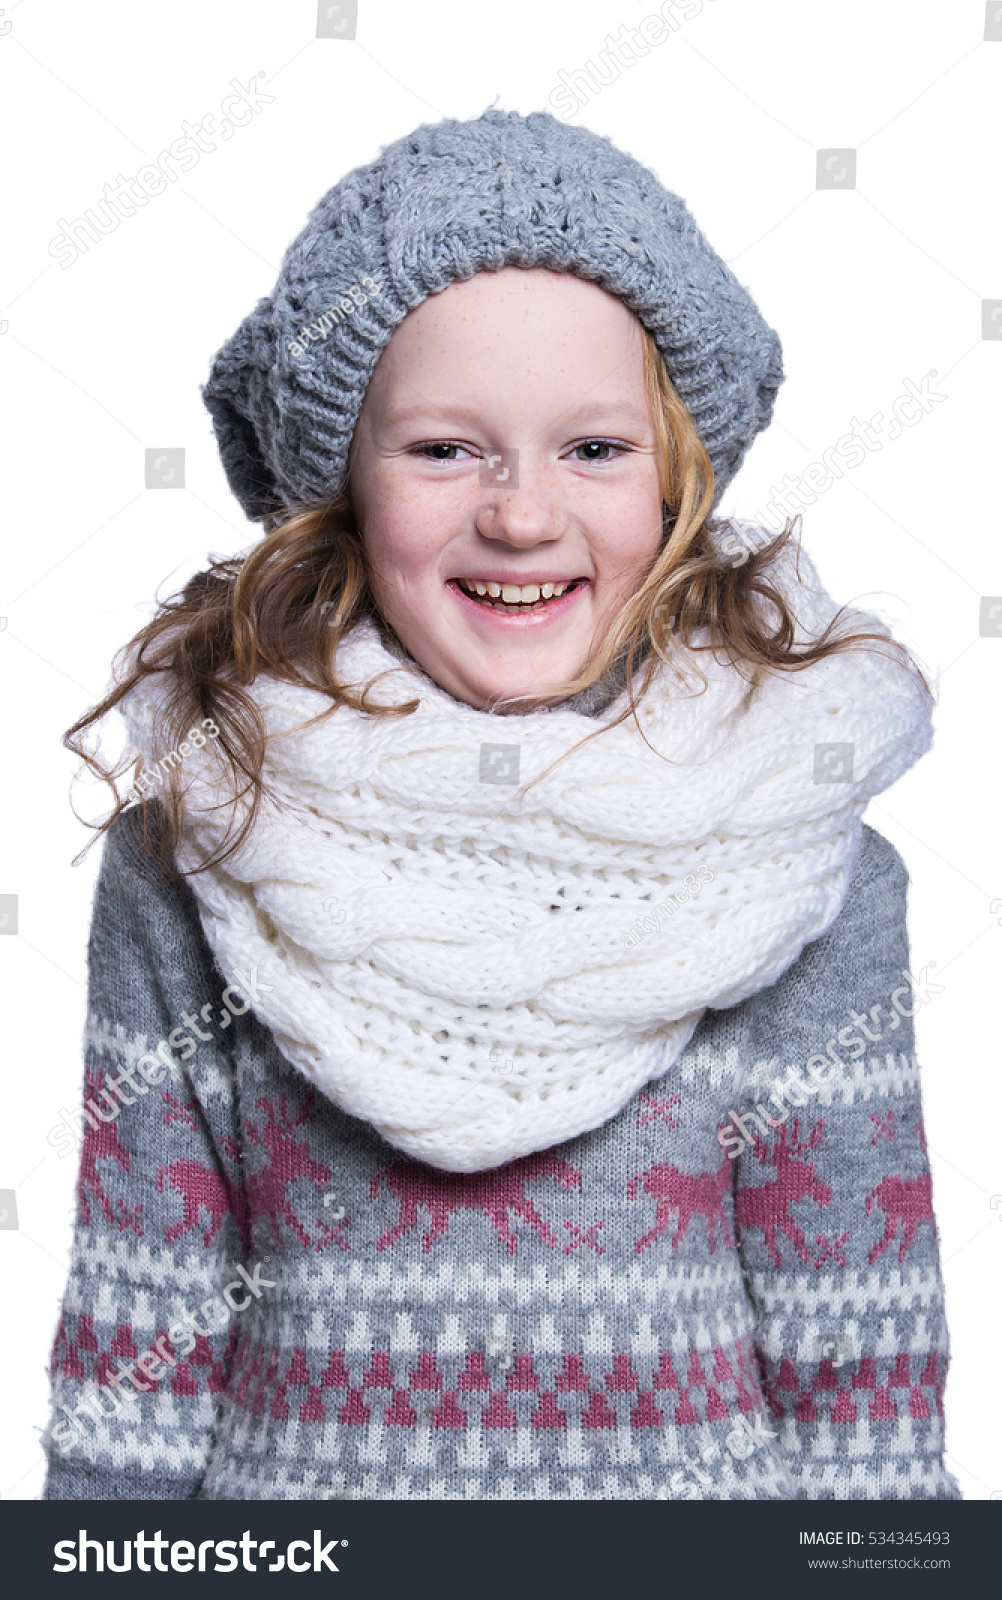 29,912 Wearing woolen sweater Images, Stock Photos & Vectors | Shutterstock